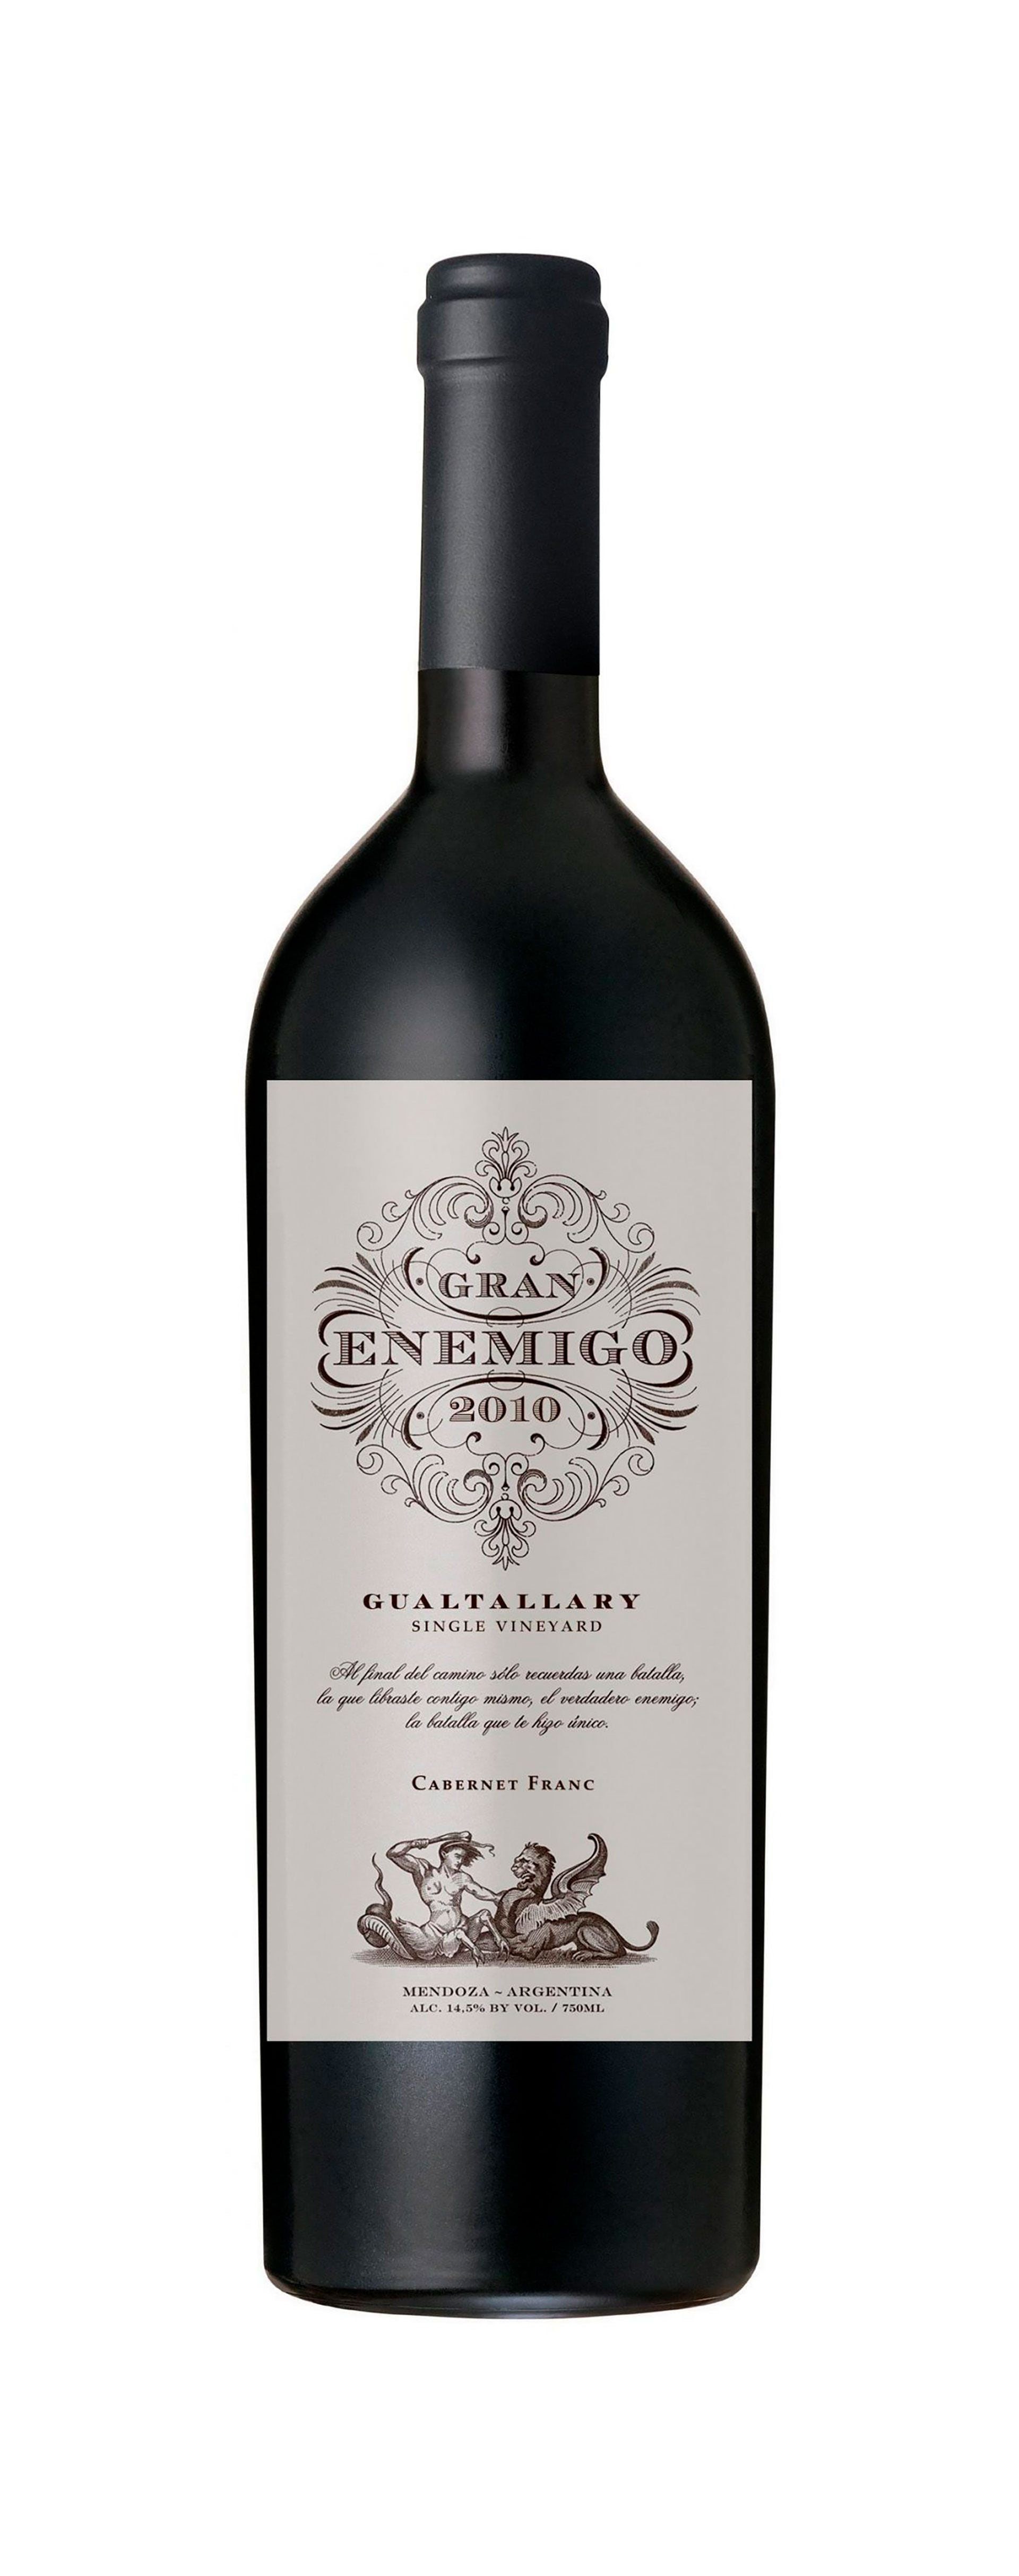 Gran enemigo cabernet franc gualtallary 2019: un vino impactante y galardonado de bodega Aleanna, ejemplo del potencial del cabernet franc en Argentina